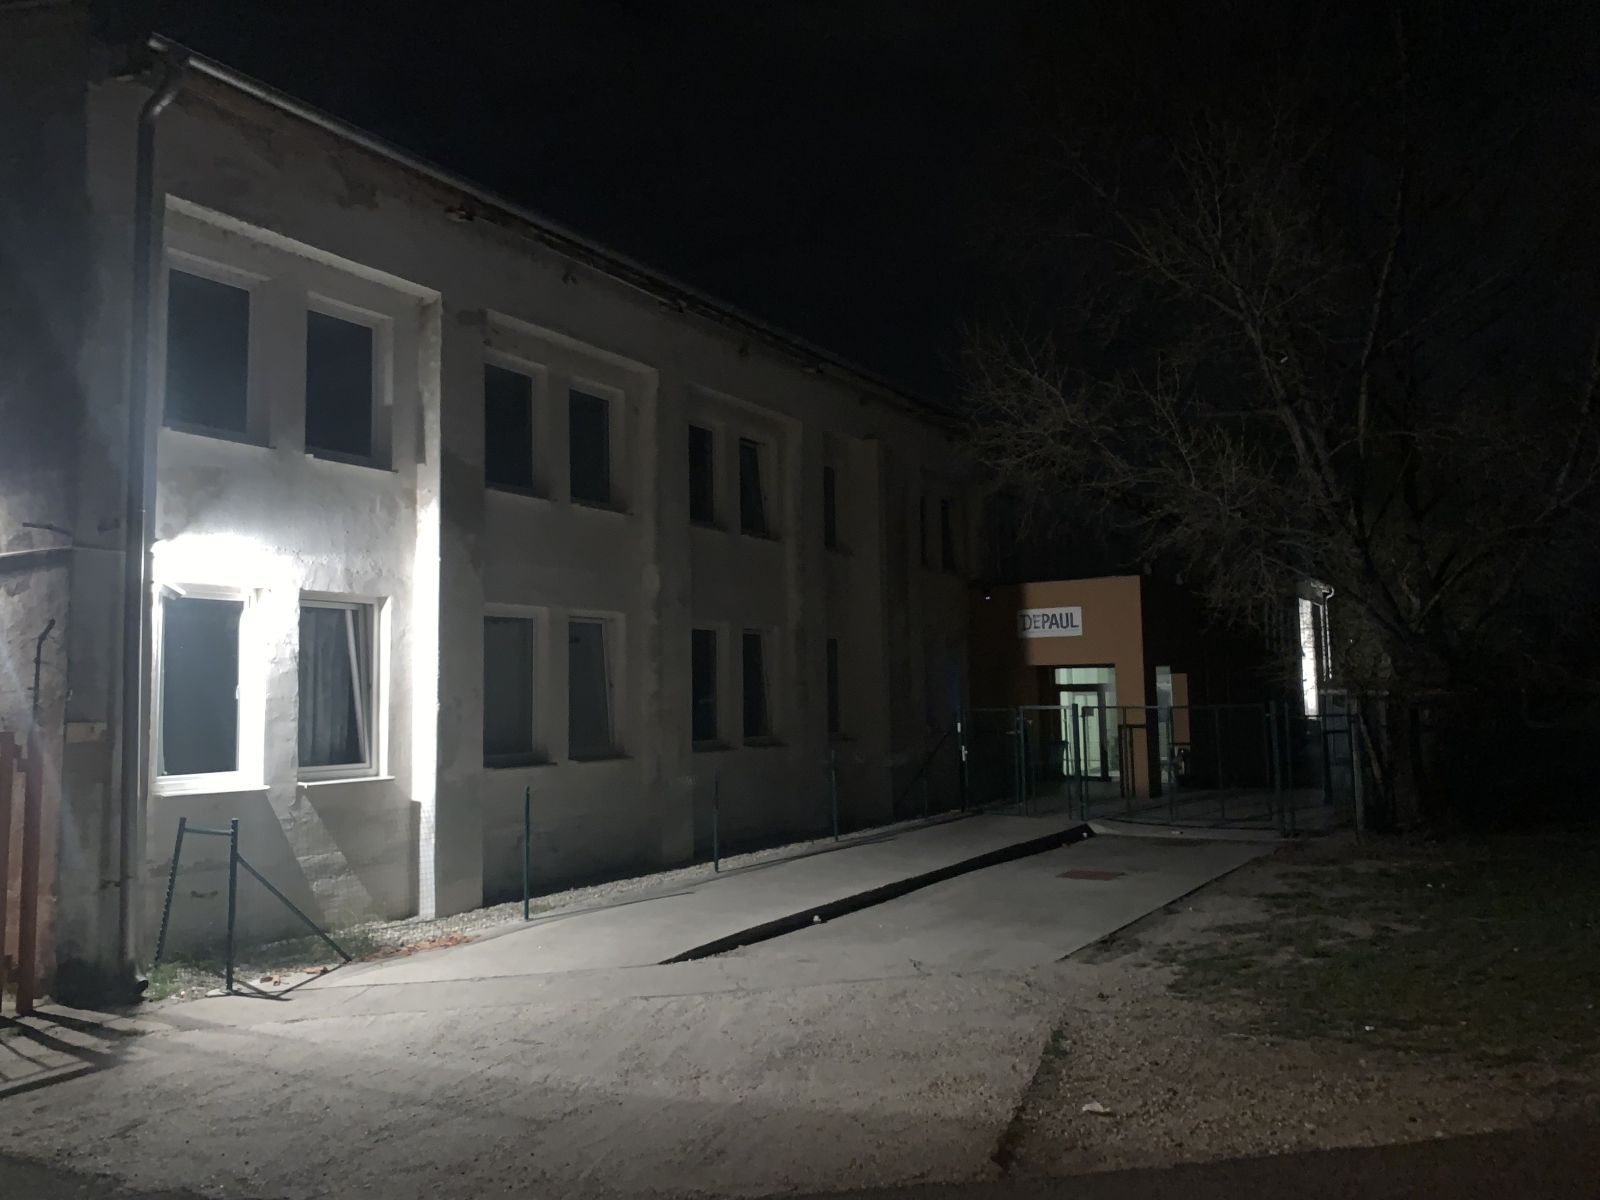 Noc v bratislavskej nocľahárni pre bezdomovcov: Alkohol skrytý na záchodoch, močenie mimo toaliet a empatickí sociálni pracovníci